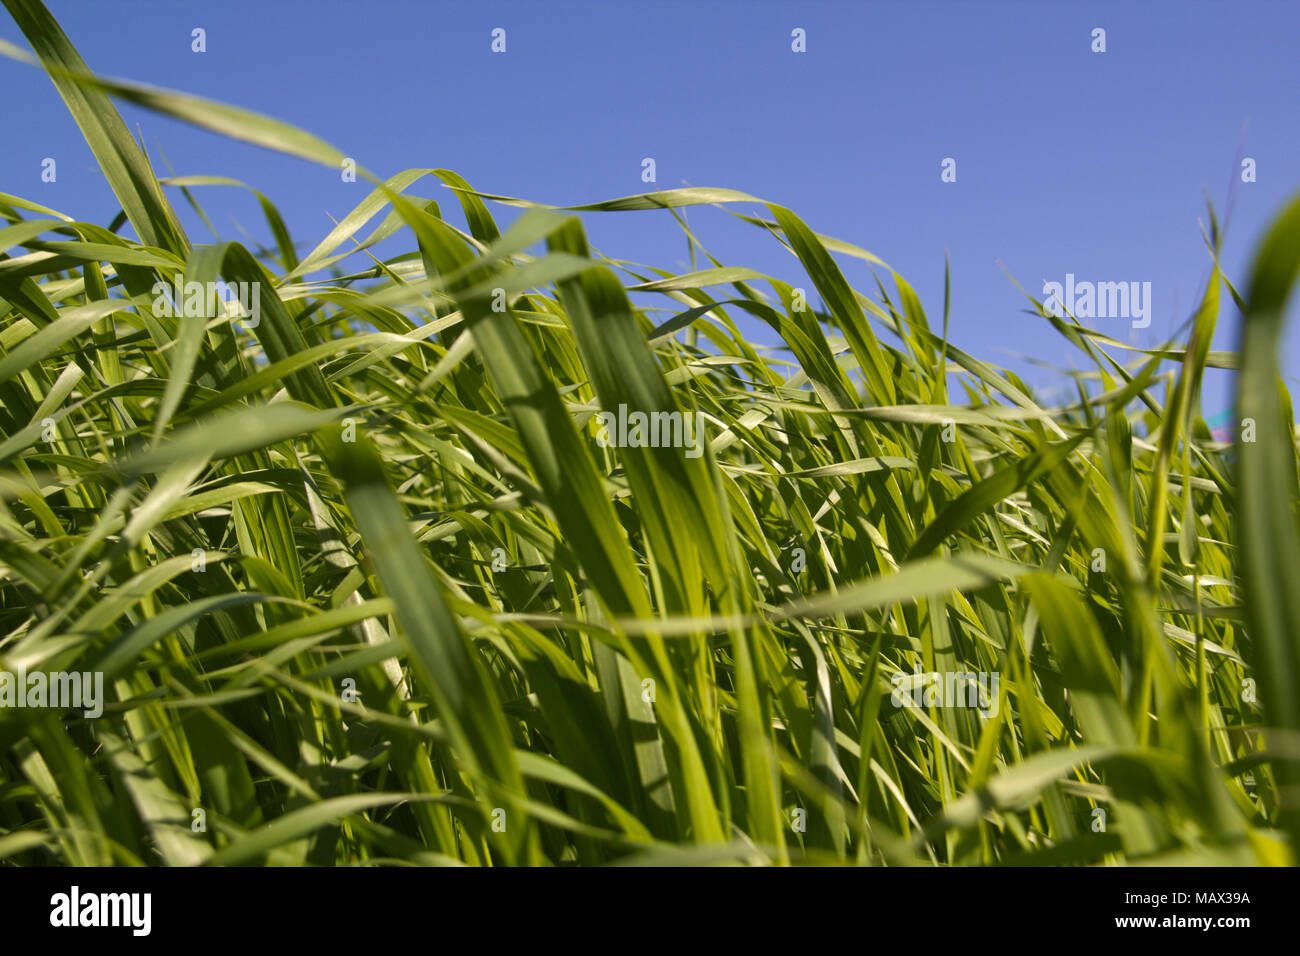 Green grass (Brachiaria Paspaloides) on blue sky background Stock Photo